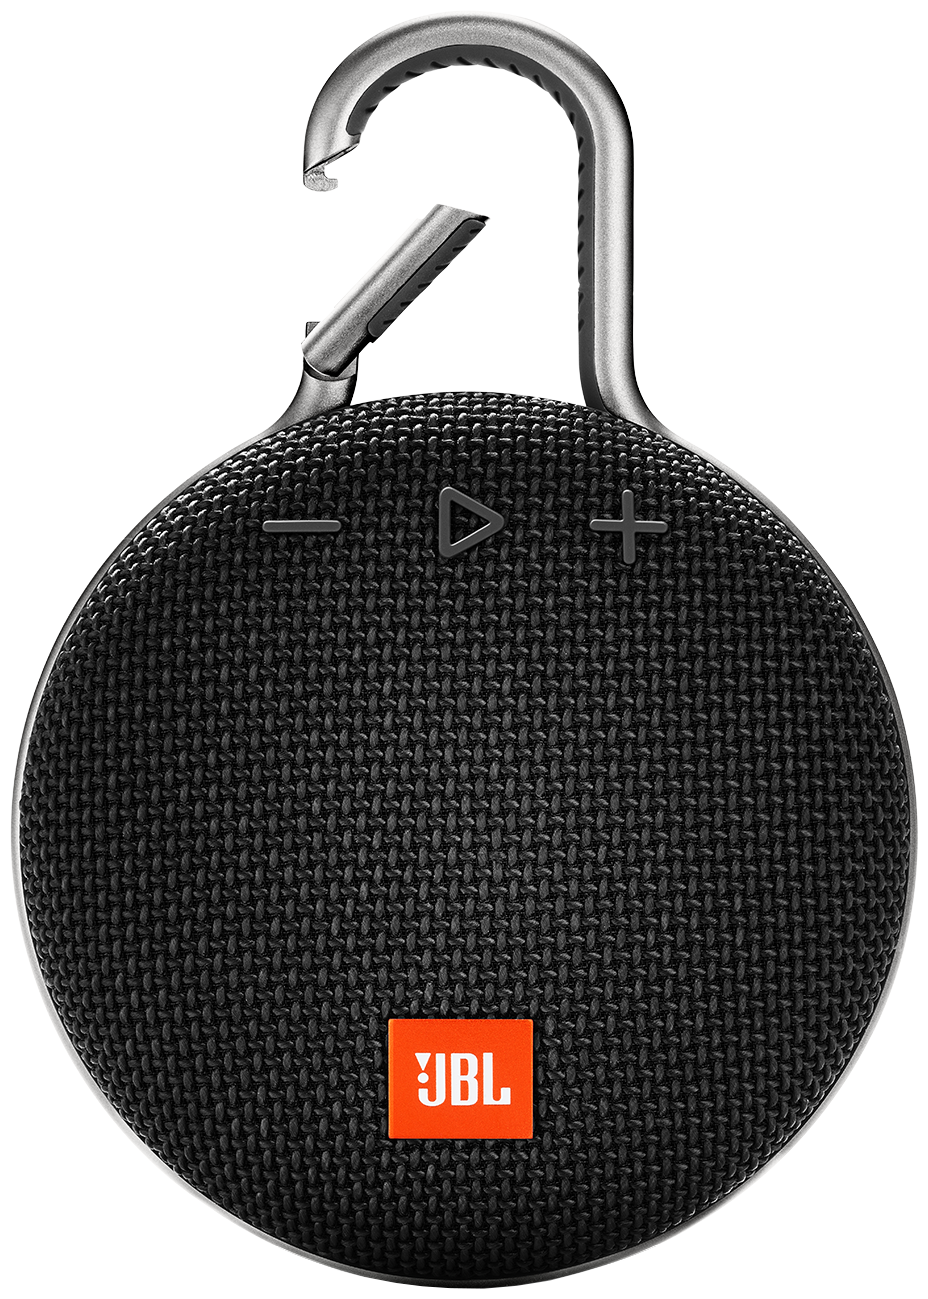 Б/У и уценка акустика JBL CLIP 3, 3.3 Вт, stone gray — купить в интернет-магазине по низкой цене на